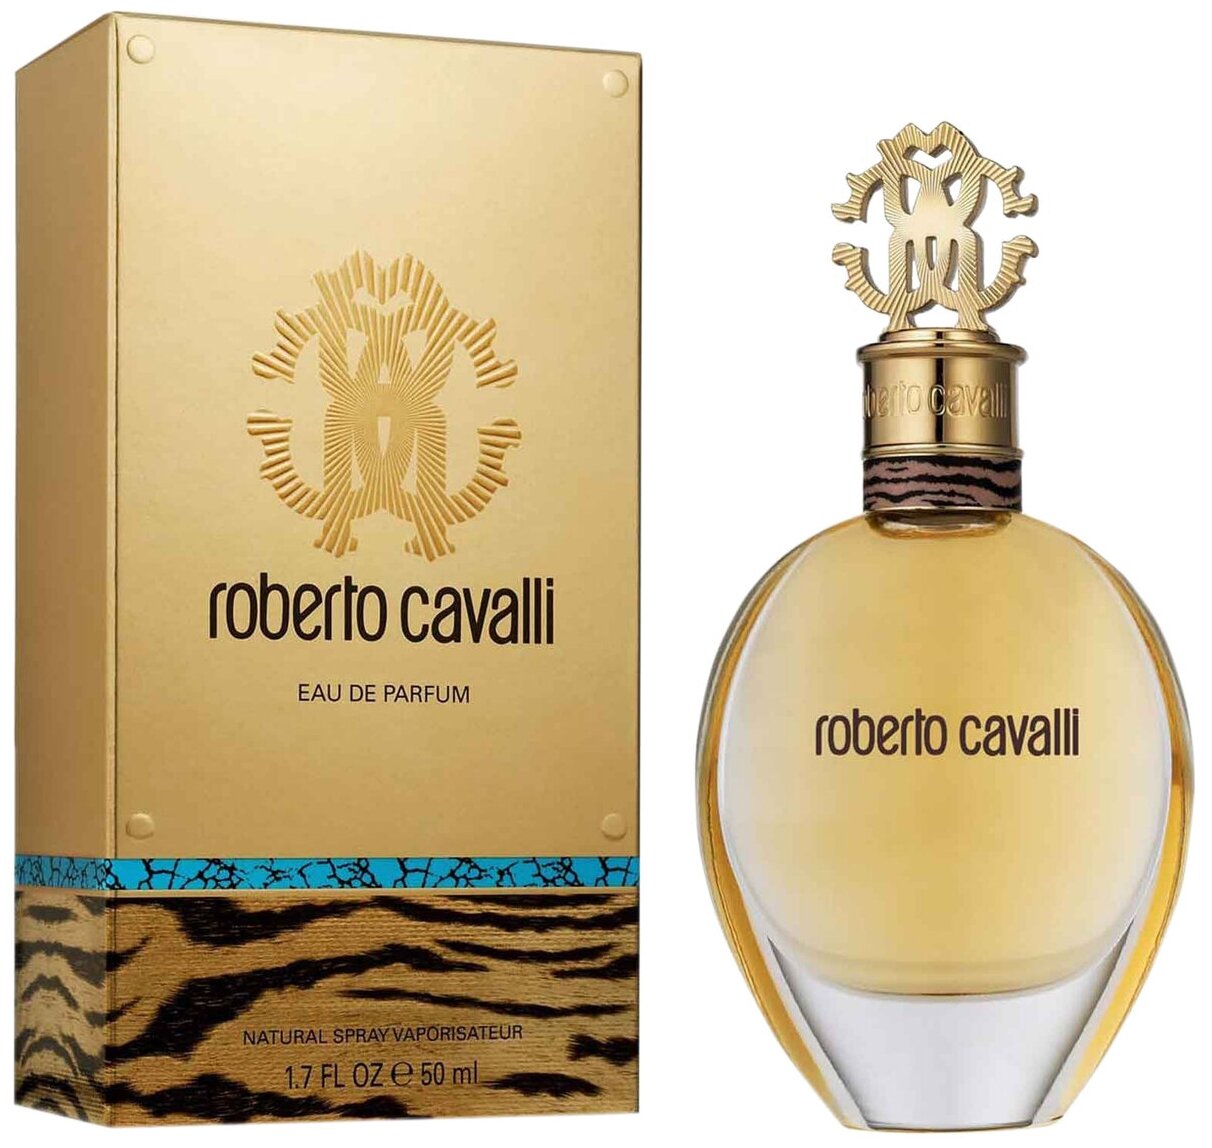 Roberto Cavalli, Eau De Parfum 2012, 50 мл, парфюмерная вода женская